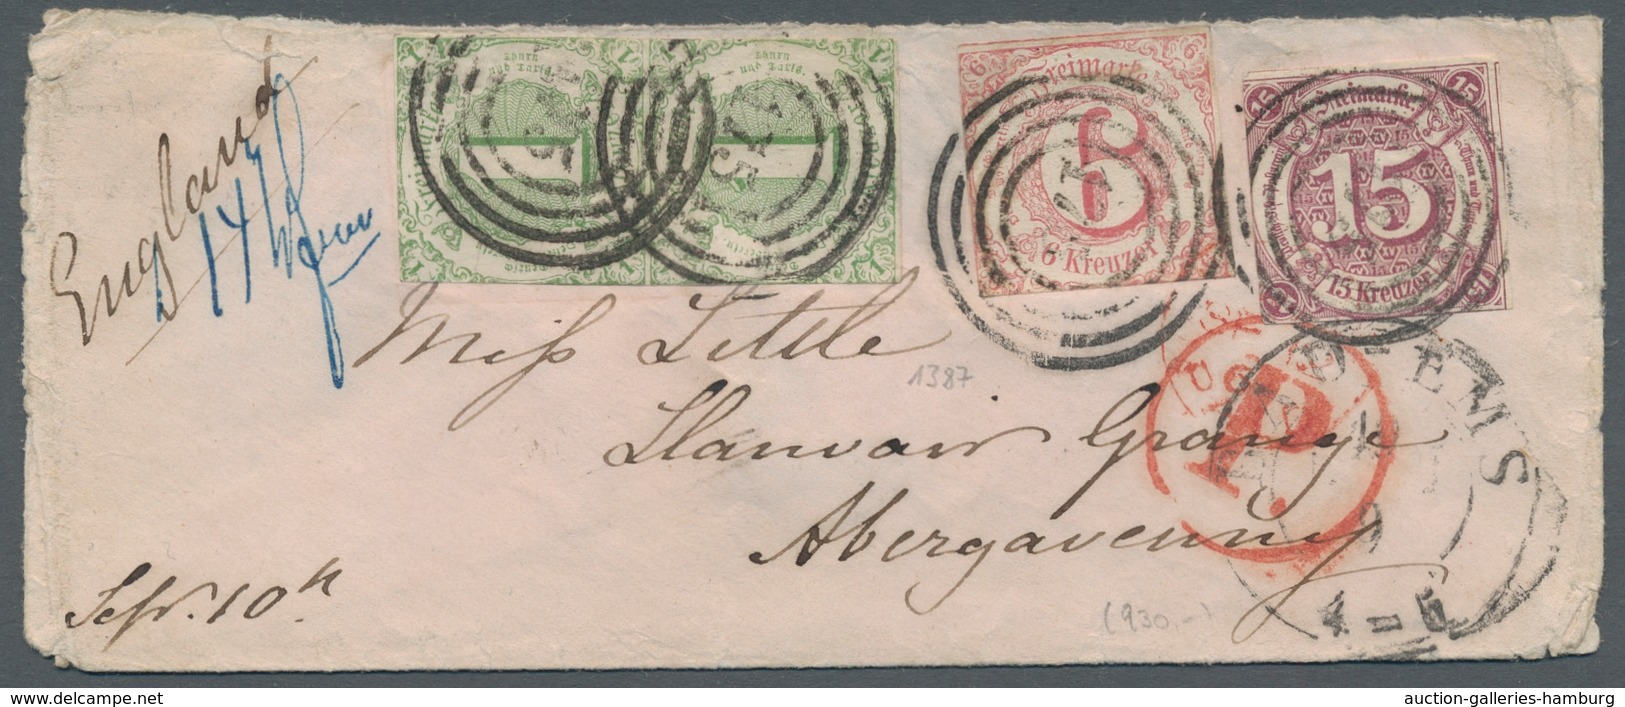 Thurn & Taxis - Marken und Briefe: 1852 - 1866; beeindruckende Sammlung von 77 Briefen und Ganzsache